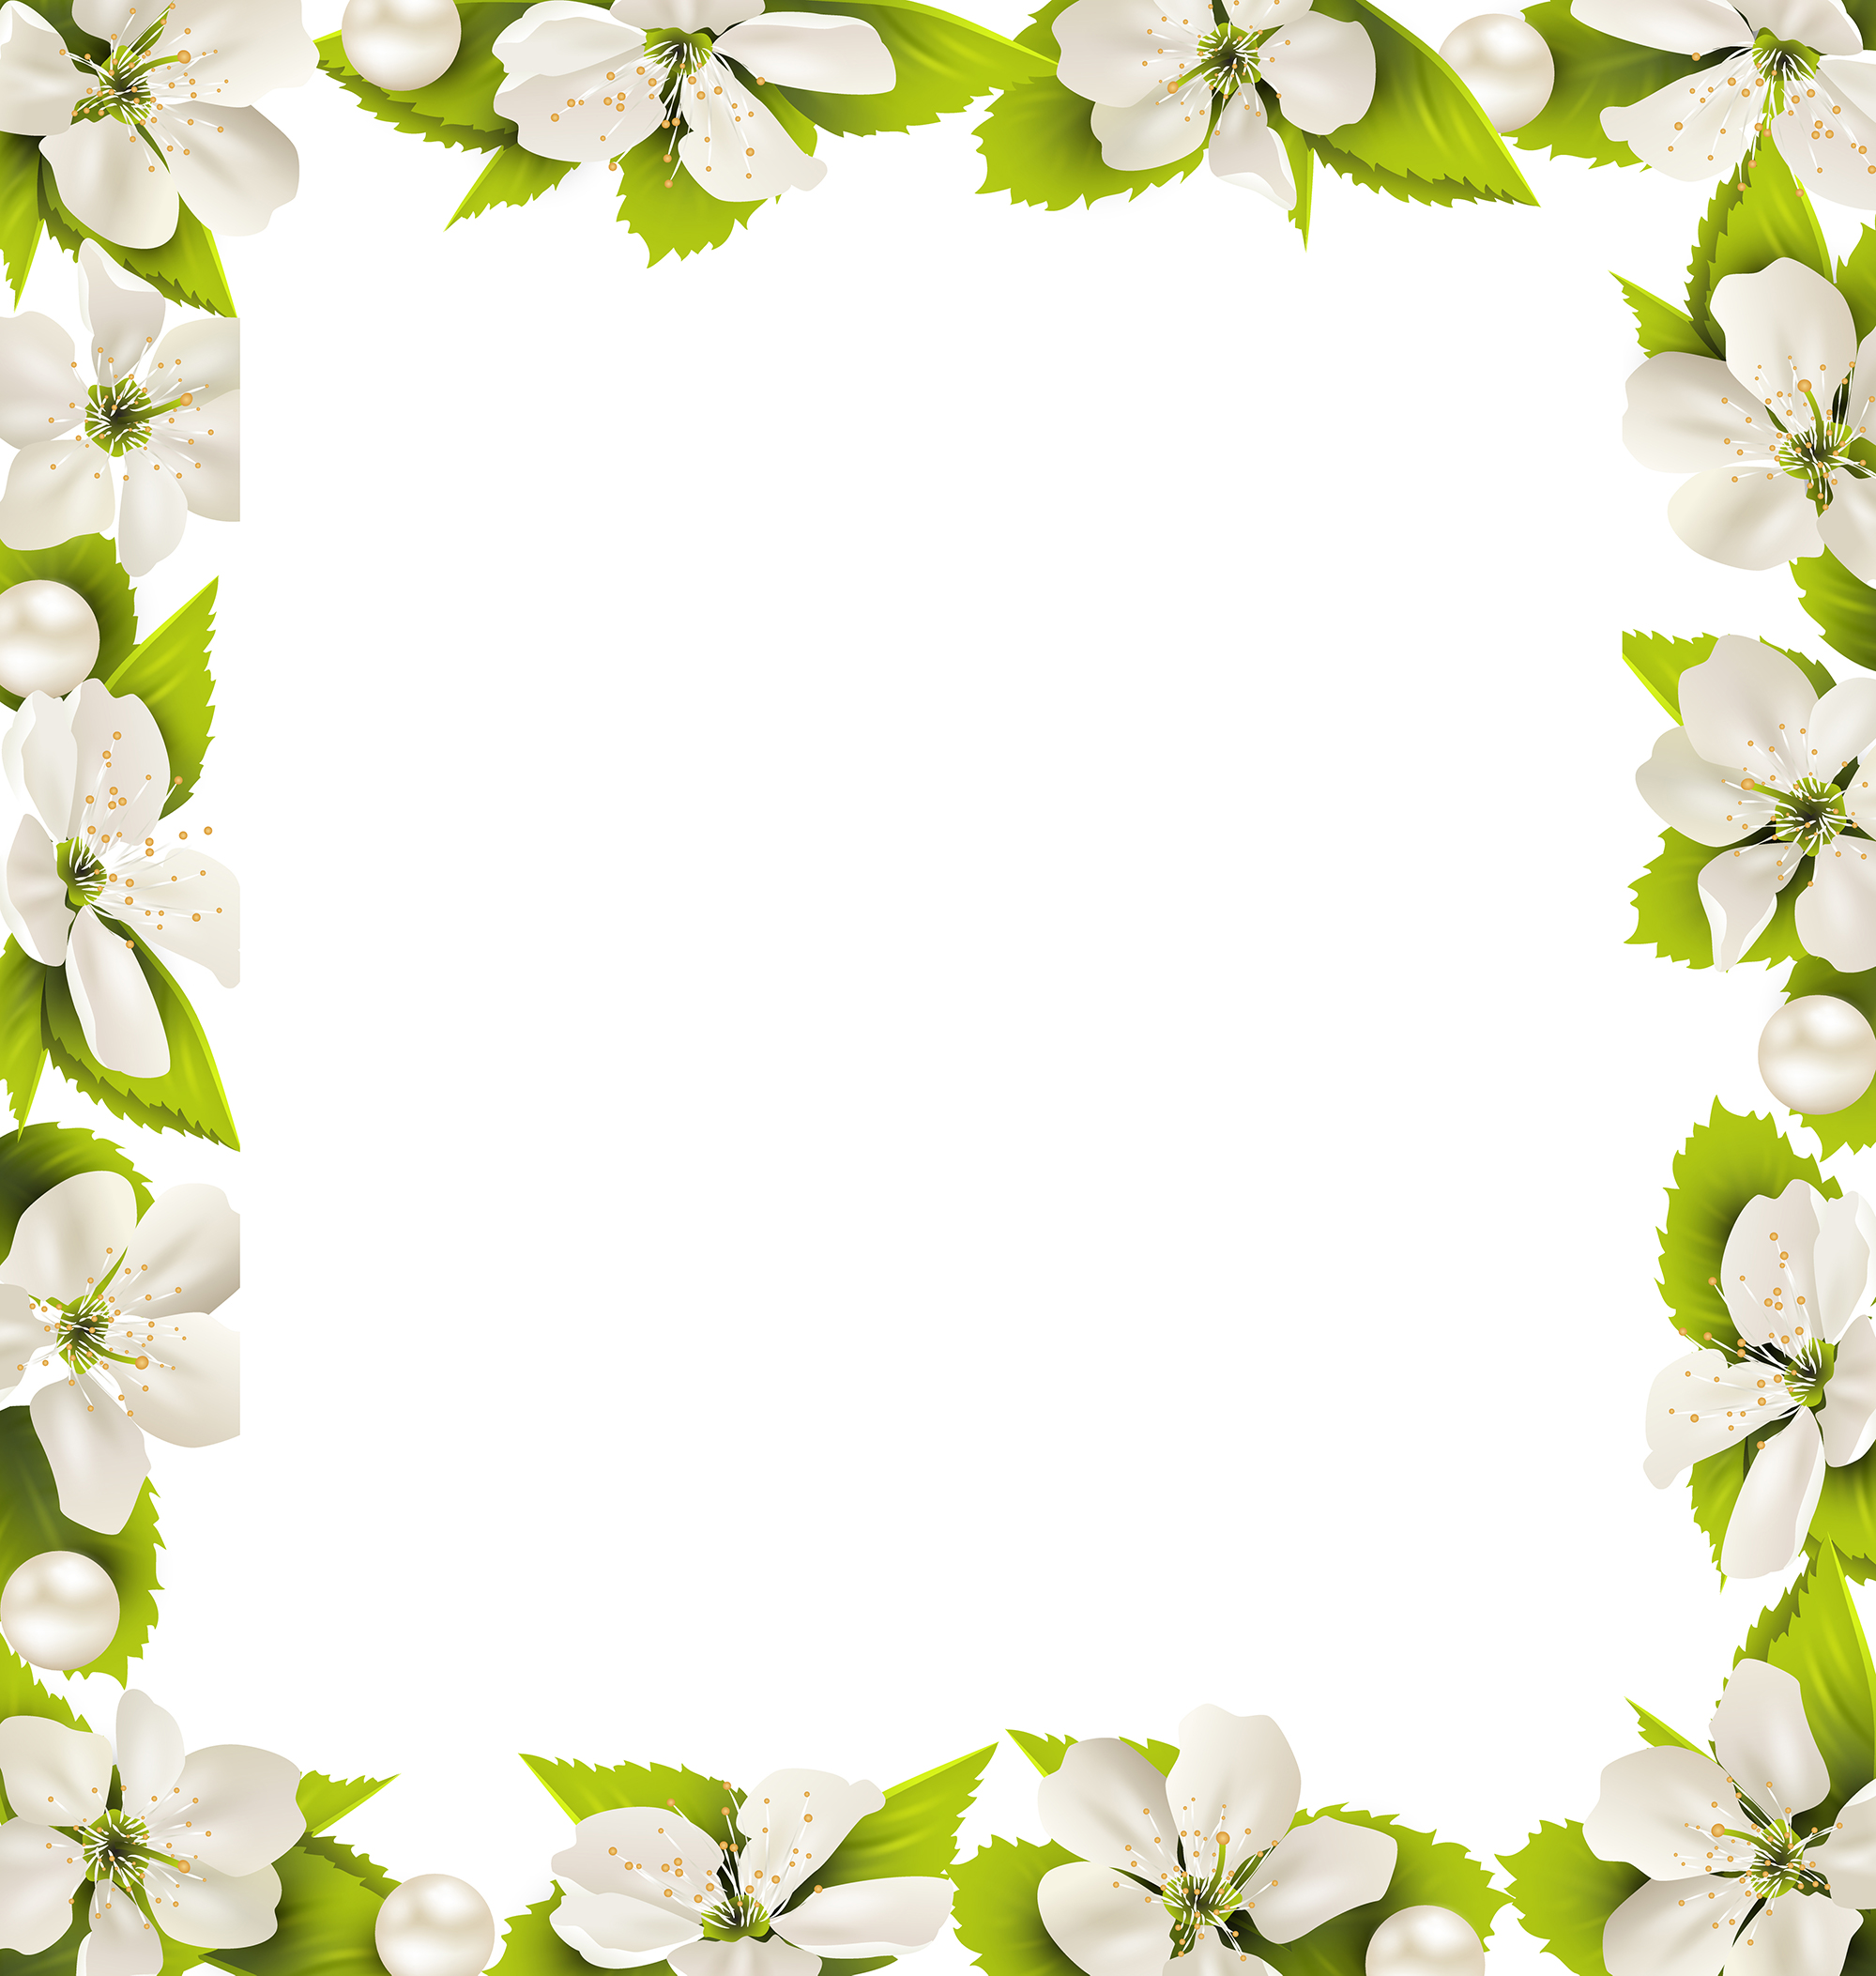 Decoframe Sommer - Blumenkranz weiss/grün